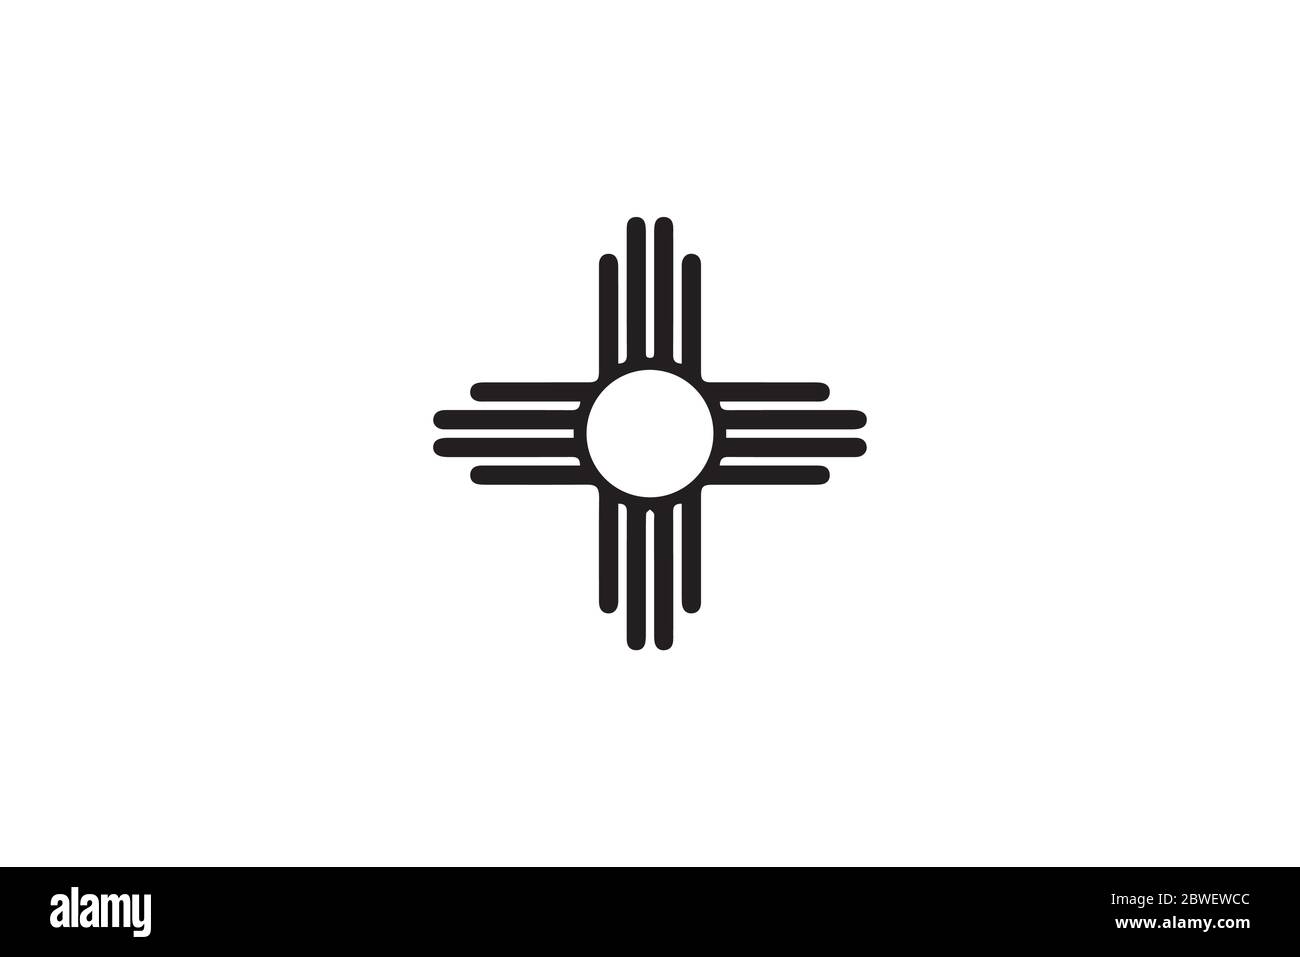 Bandiera dello stato NM del nuovo Messico. Stati Uniti d'America. File vettoriale EPS in bianco e nero. Illustrazione Vettoriale